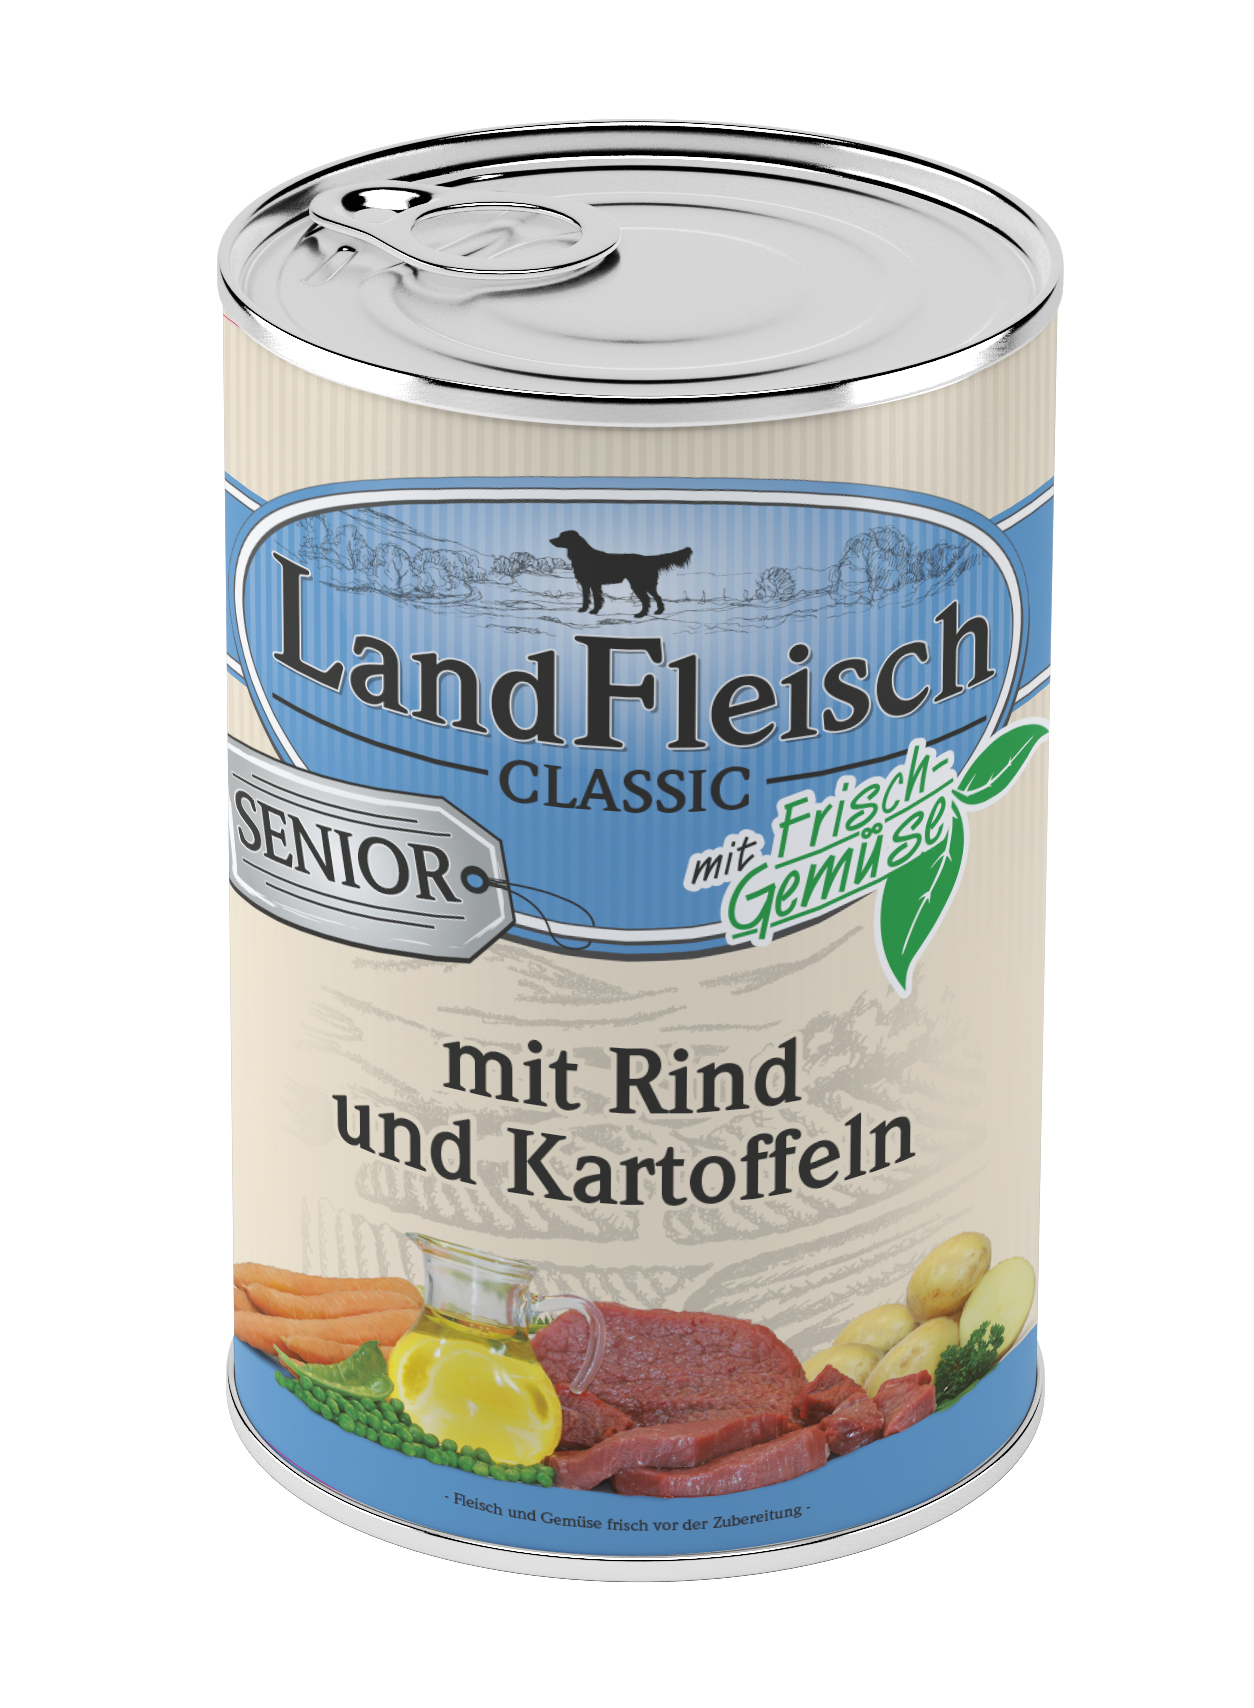 LandFleisch Classic Senior Rind & Kartoffeln mit Frischgemüse